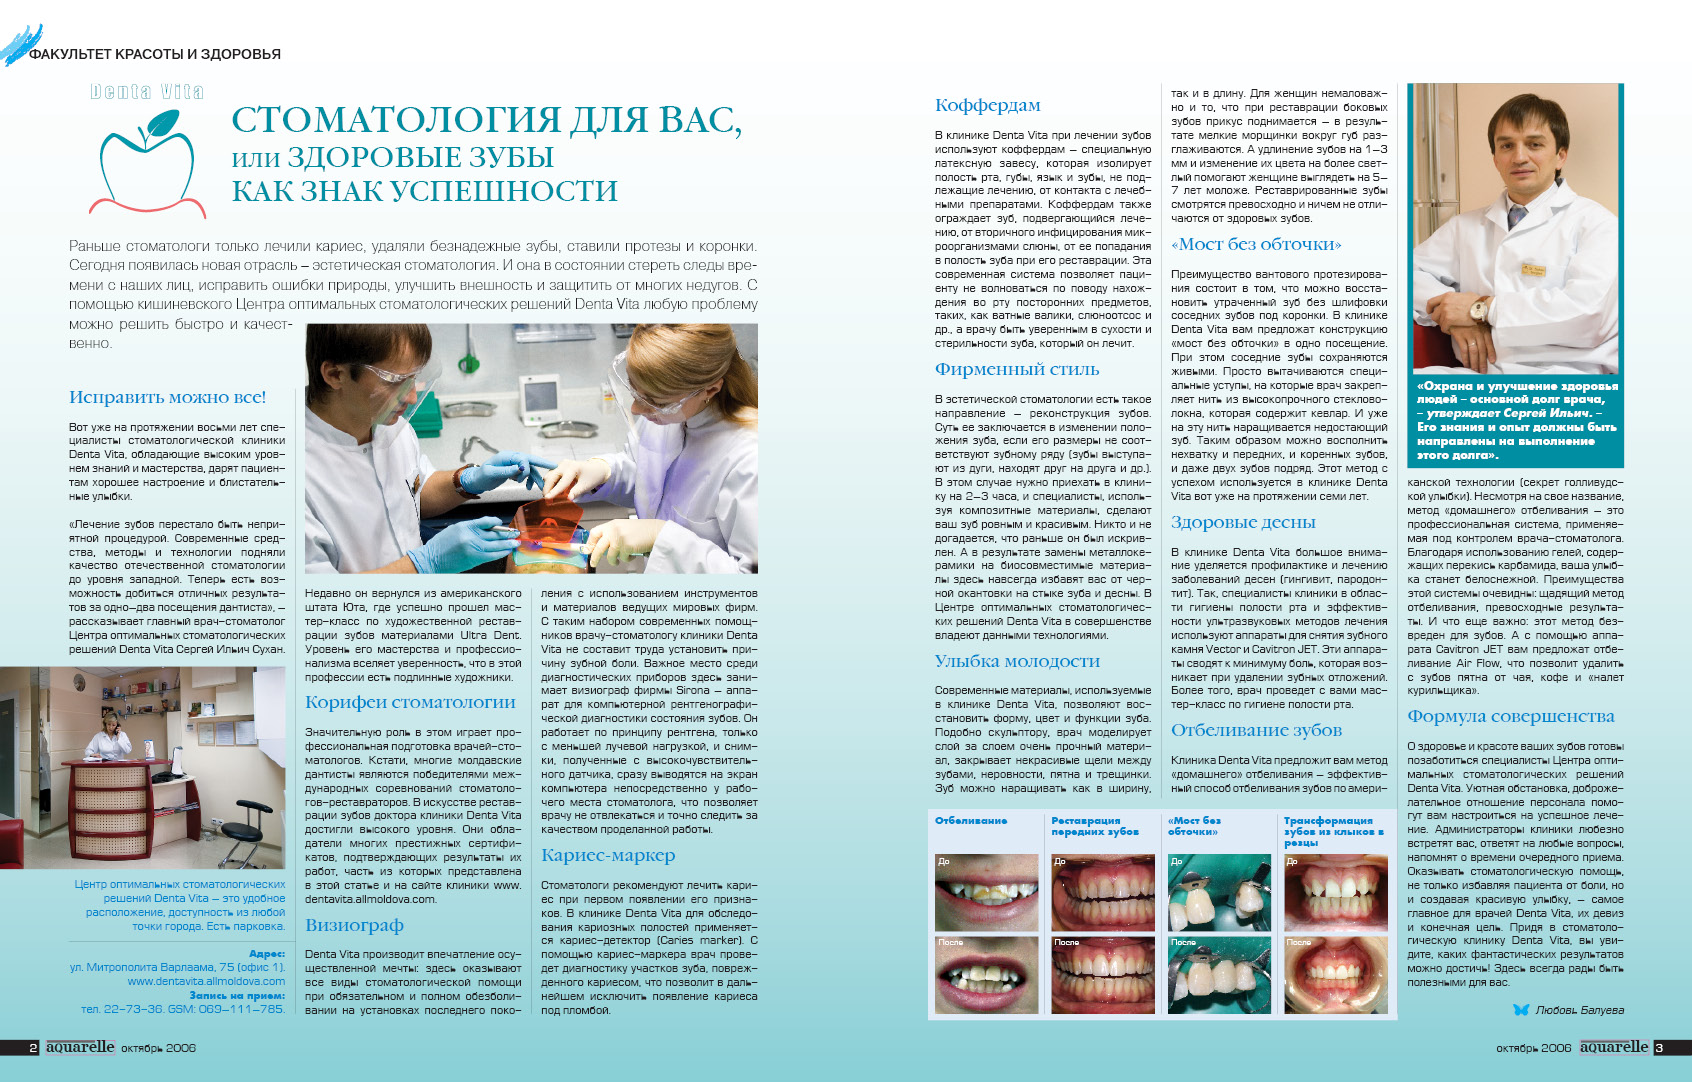 Статьи по стоматологии для пациентов